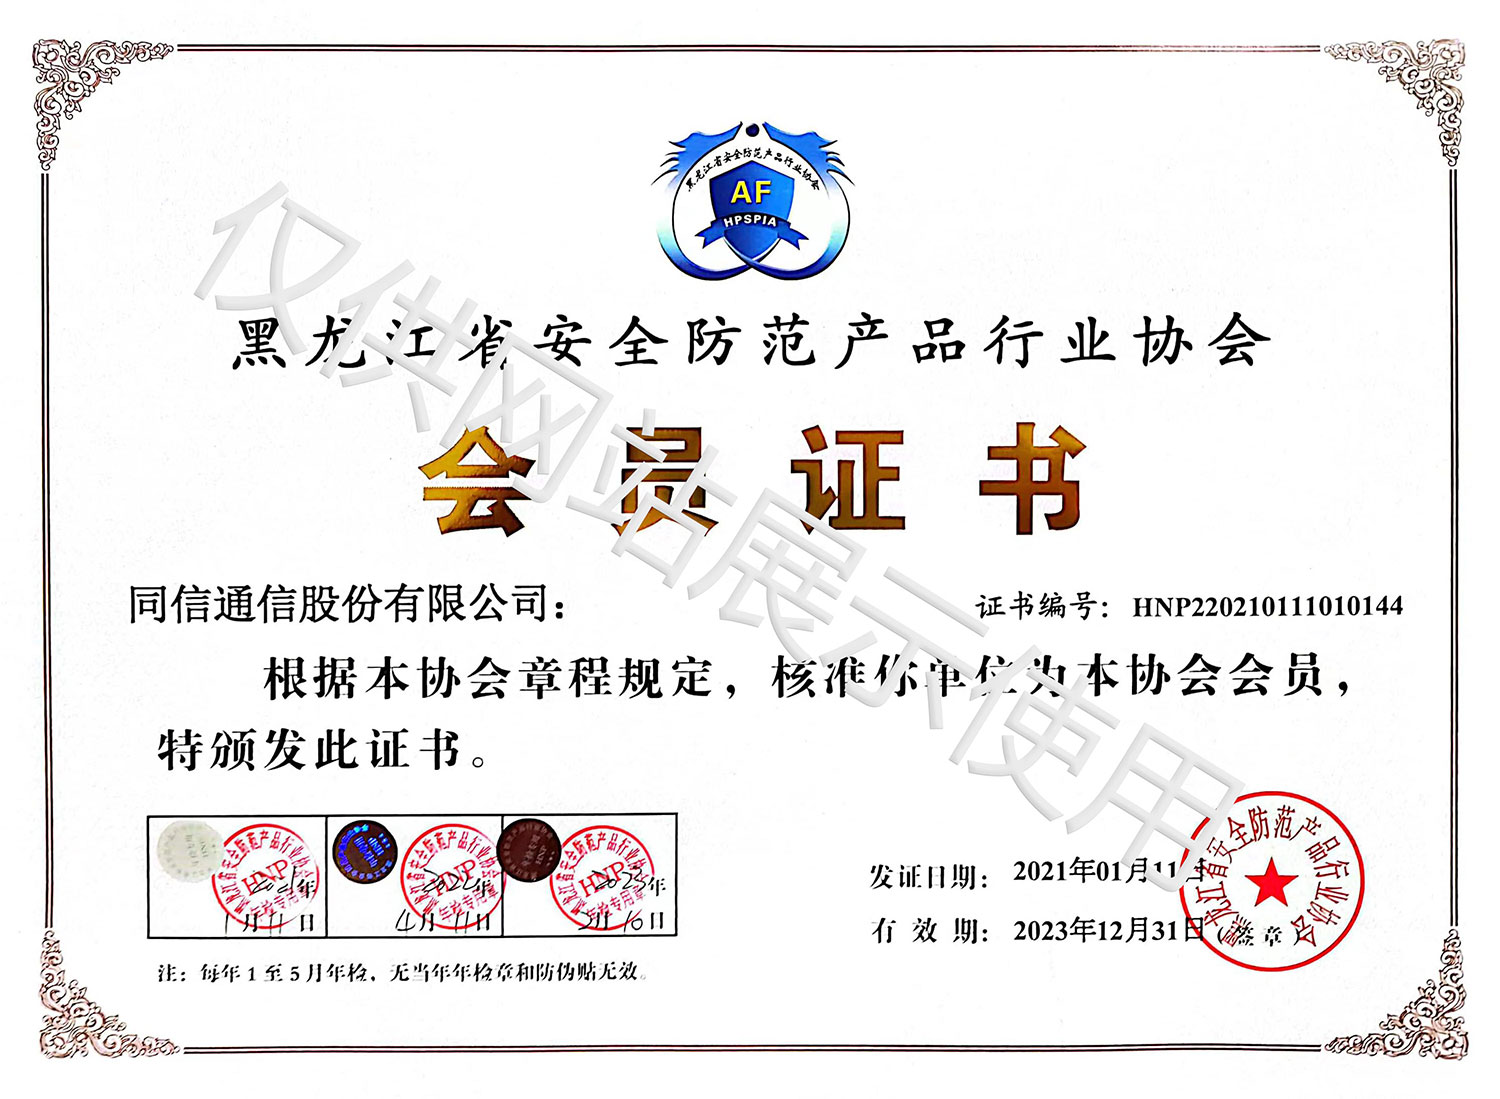 黑龙江省安全防范产品行业协会会员